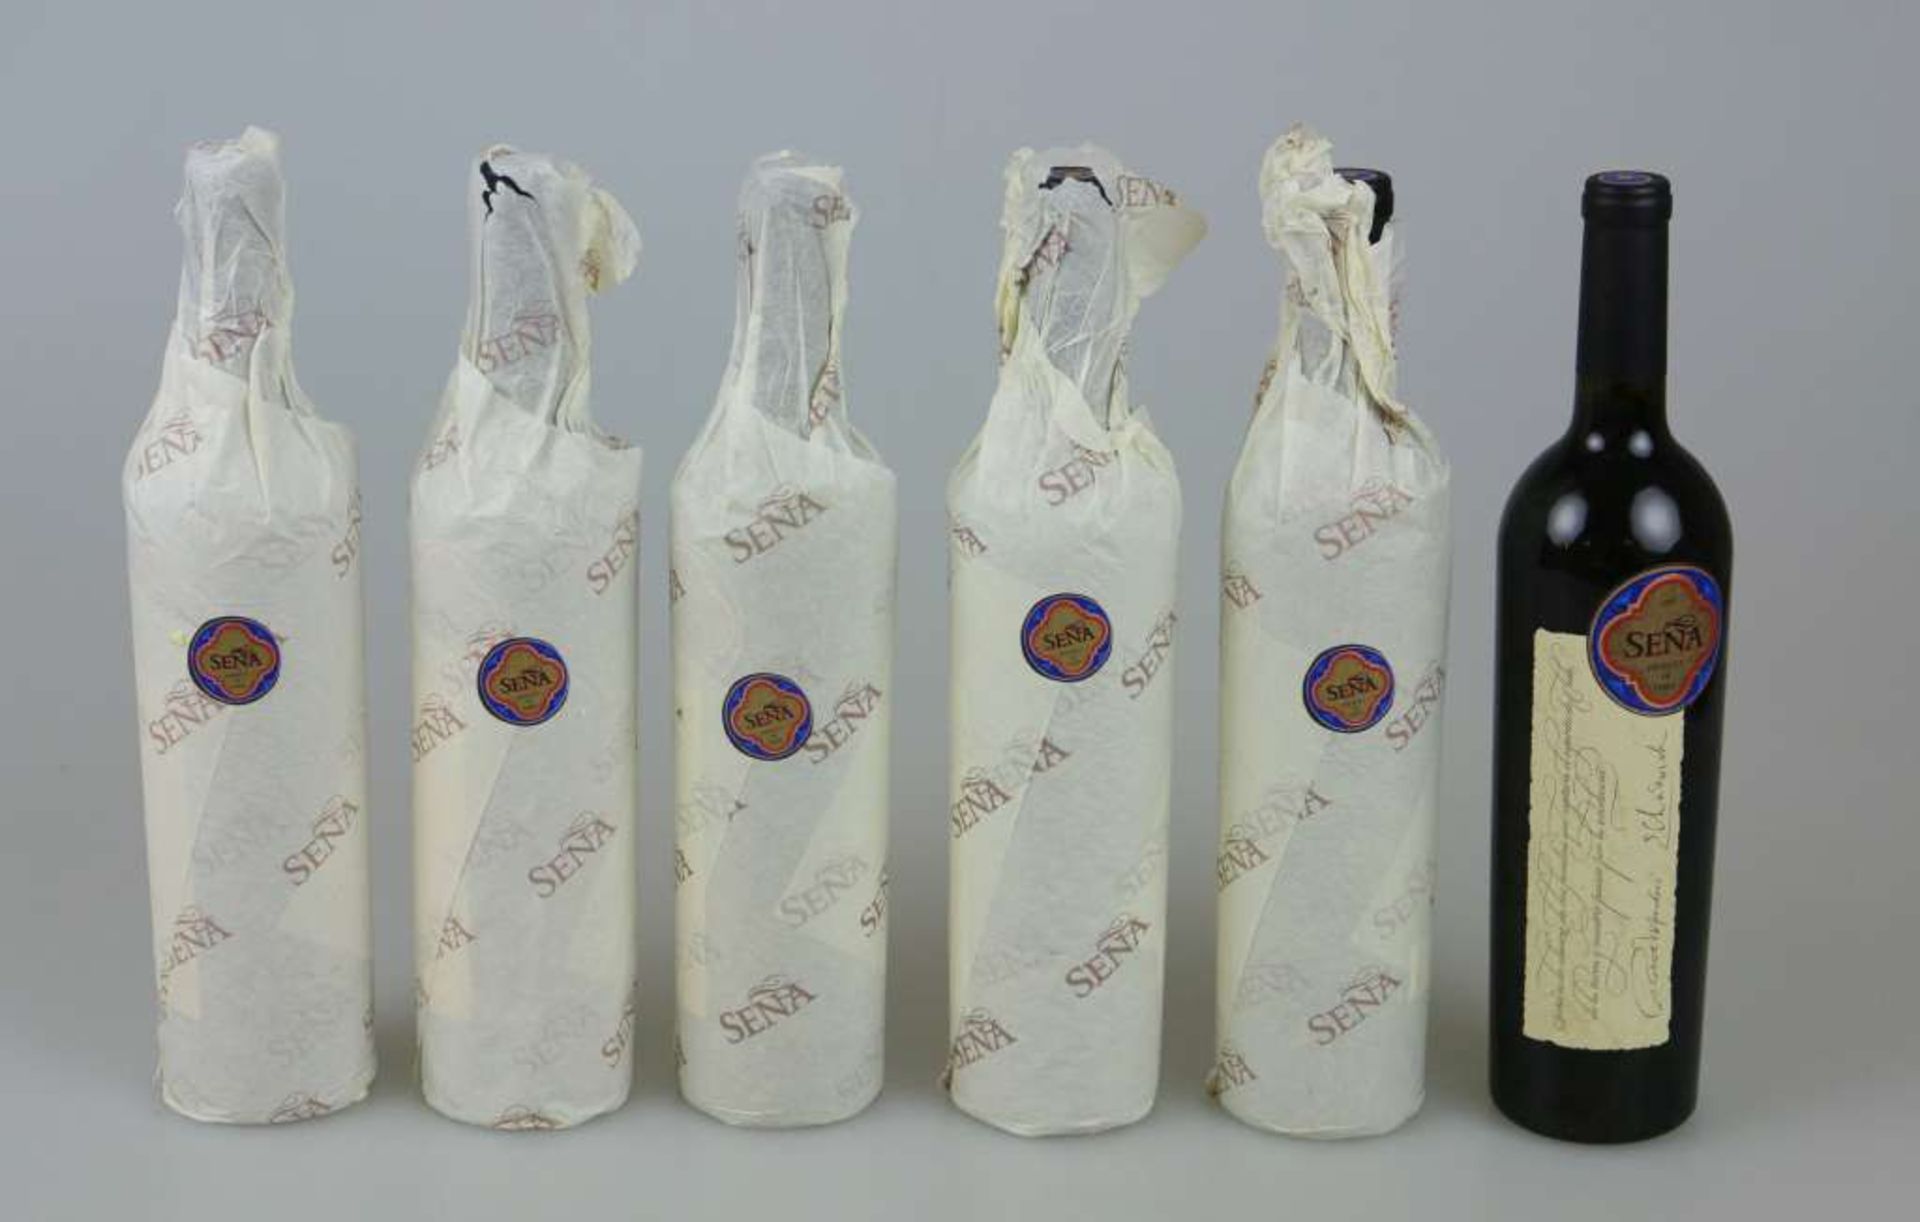 Rotwein, 6 Flaschen Sena, Vina Errazuriz/ Mondavi, Aconcagua Valley Chile, 1995, 0,75 L. Der Wein